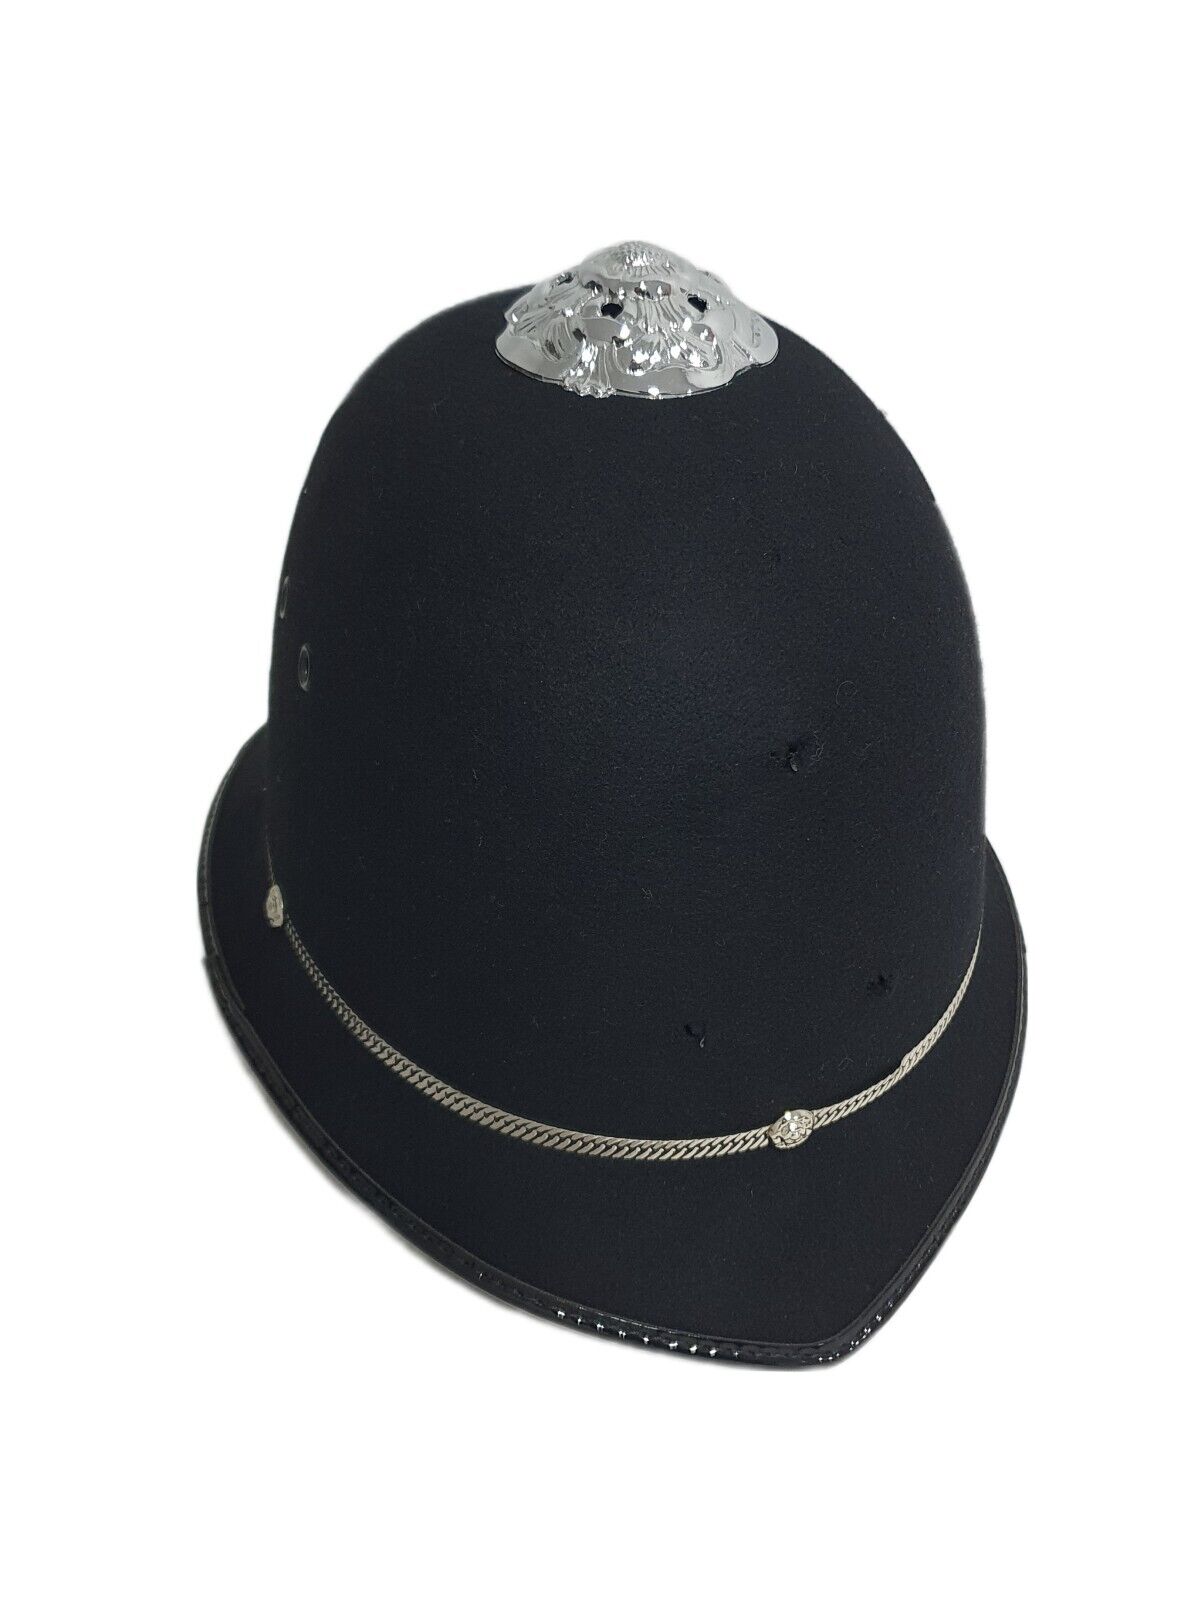 Awaken Secréte Litteratur Original British Police Bobby Custodian Helmet Hat UK Police Size 58 | eBay